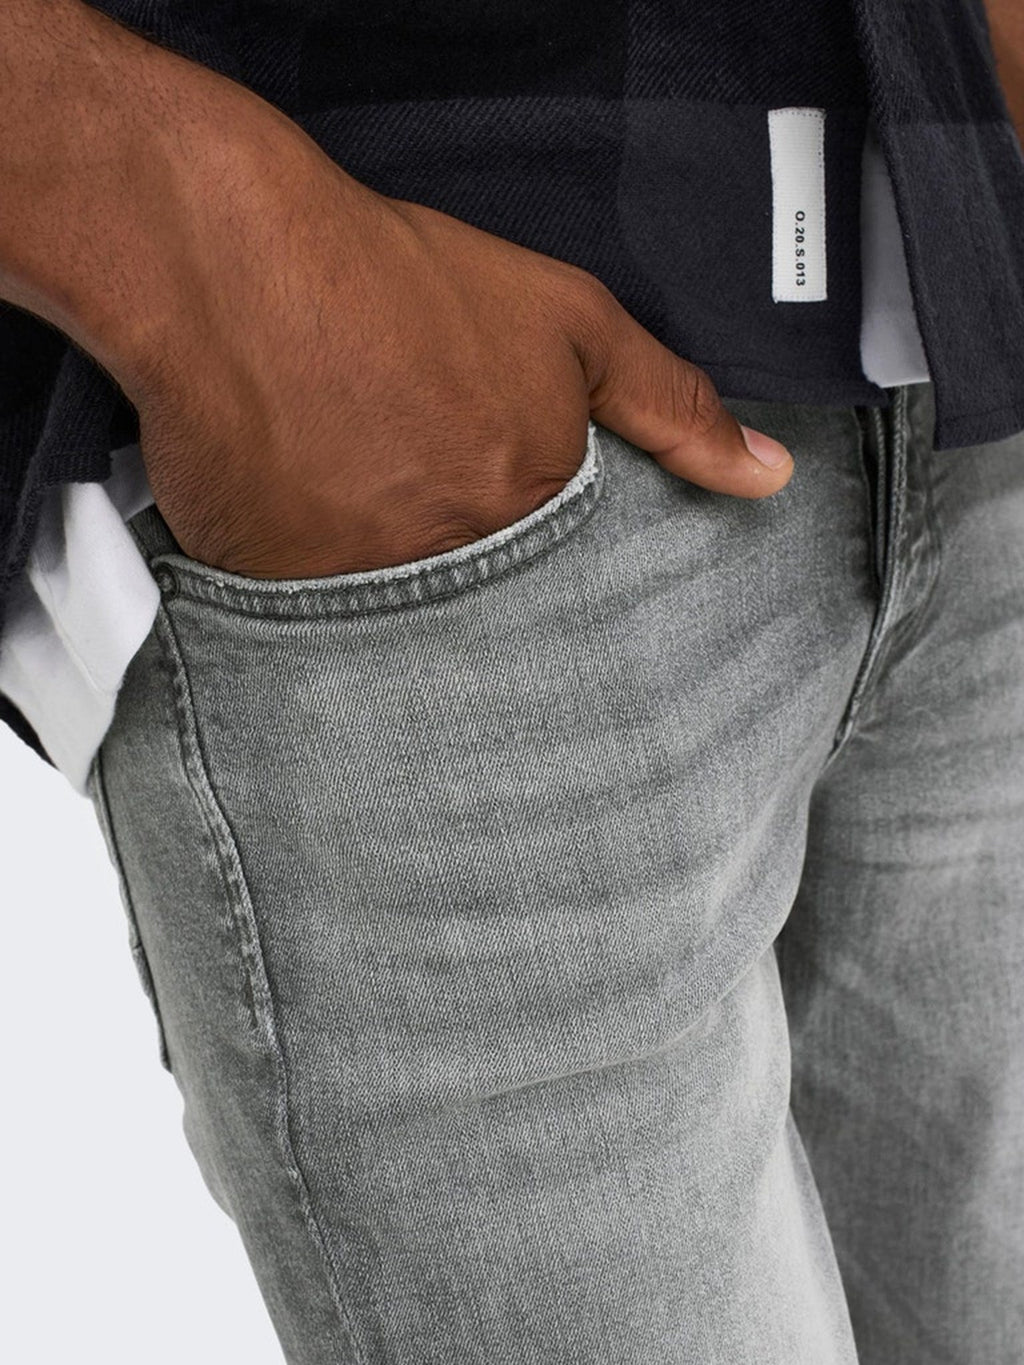 Webstuhl schlanke graue Jeans - grau